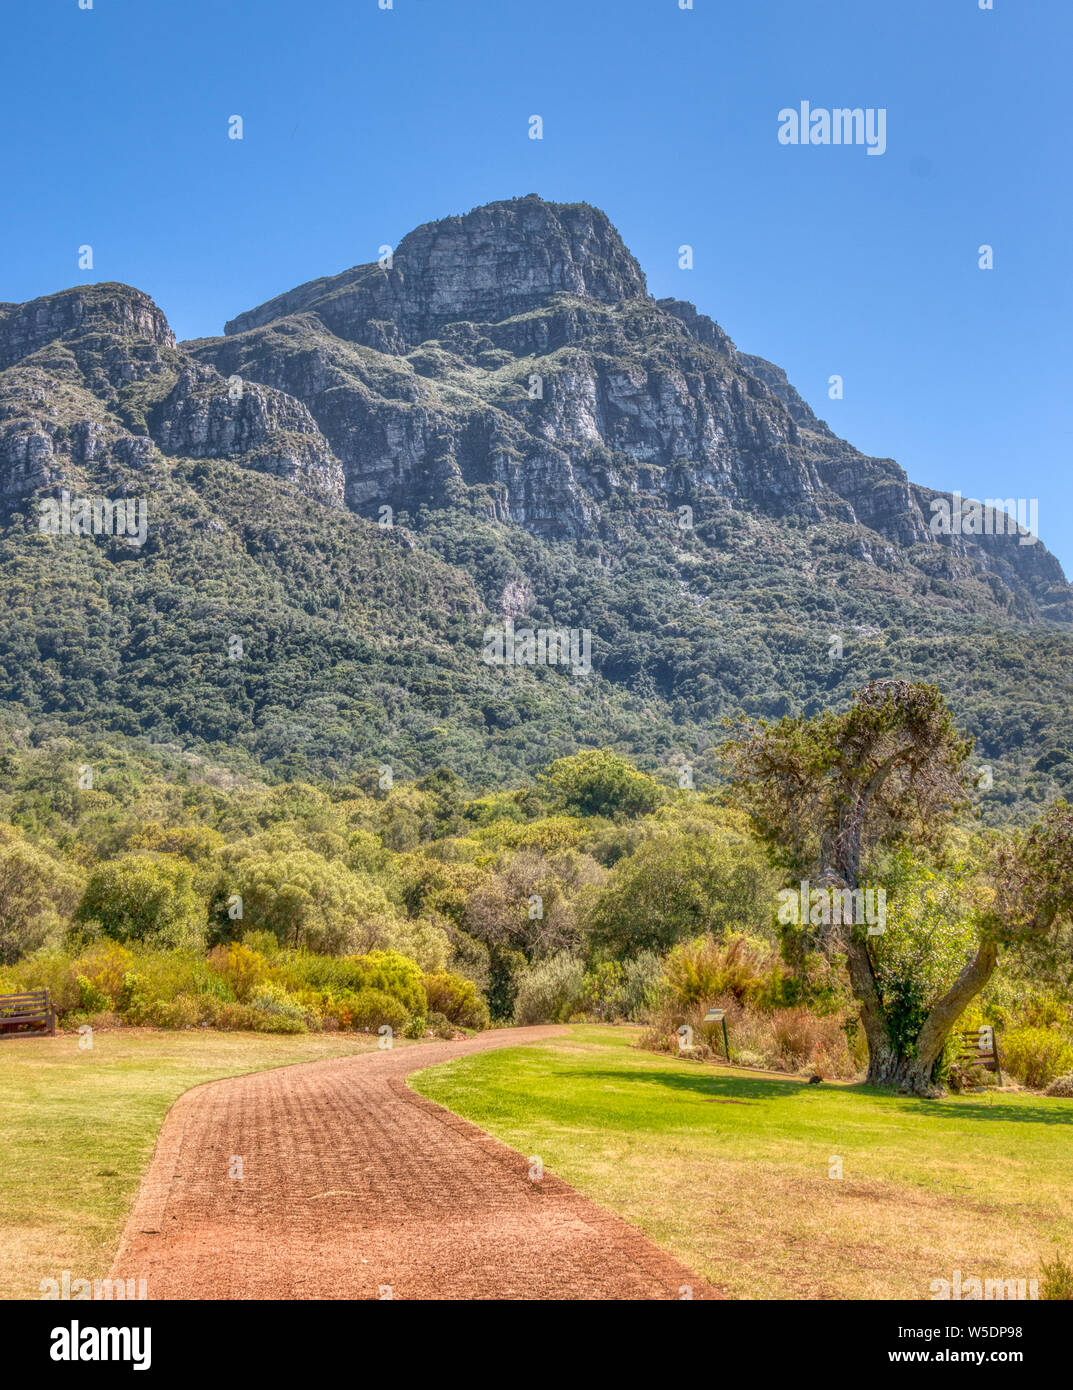 Jardins botaniques de Kirstenbosch à Cape Town, Afrique du Sud. Une brique chemin mène les visiteurs à travers les jardins. Haut de Table Mountain, dans la distance. Banque D'Images